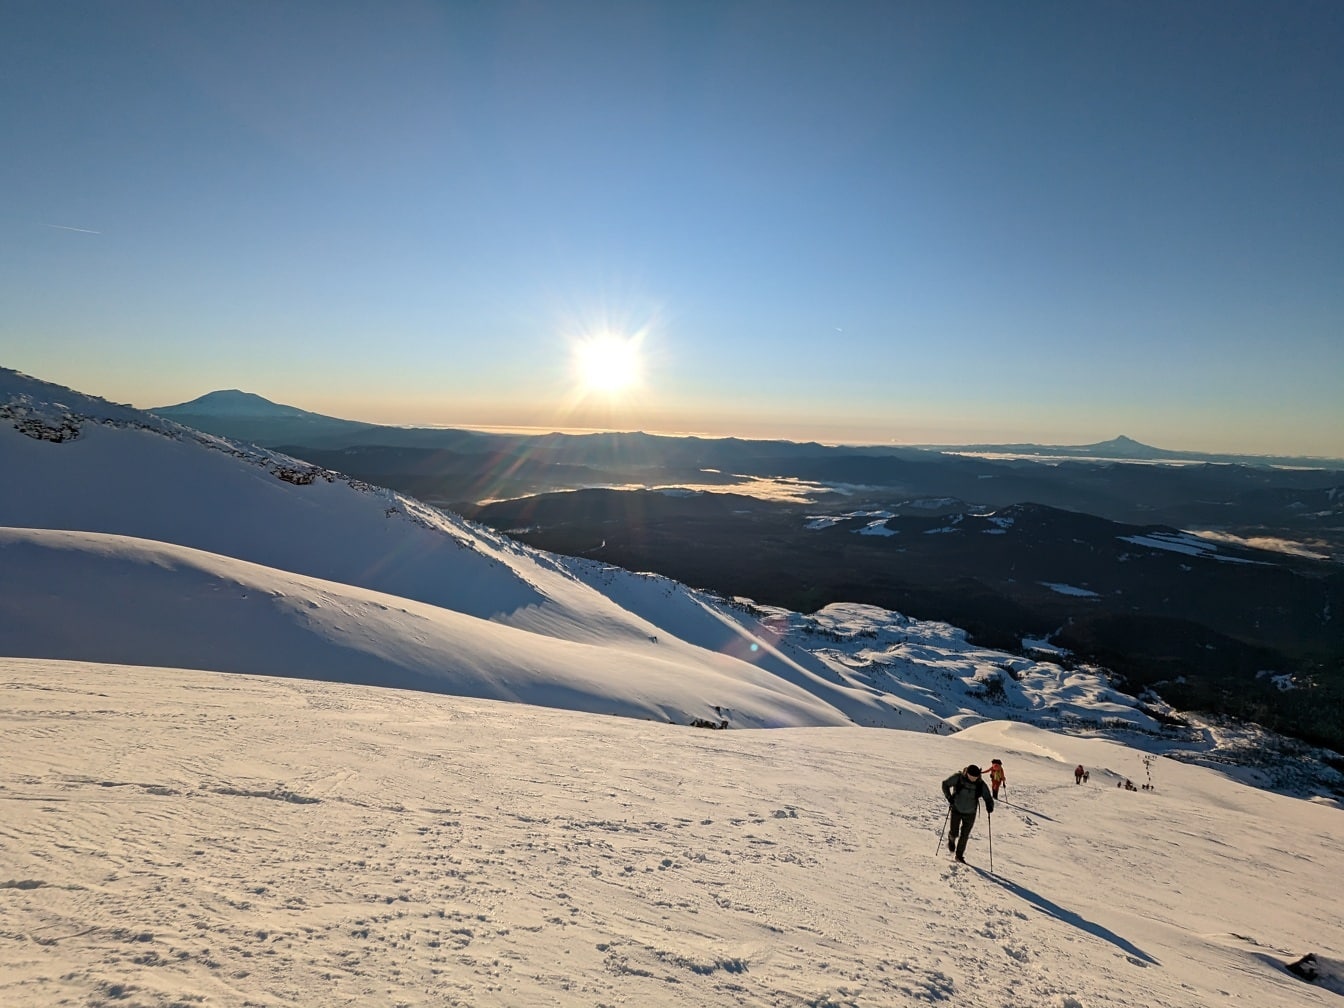 Alpiniste grimpant au sommet d’une montagne enneigée